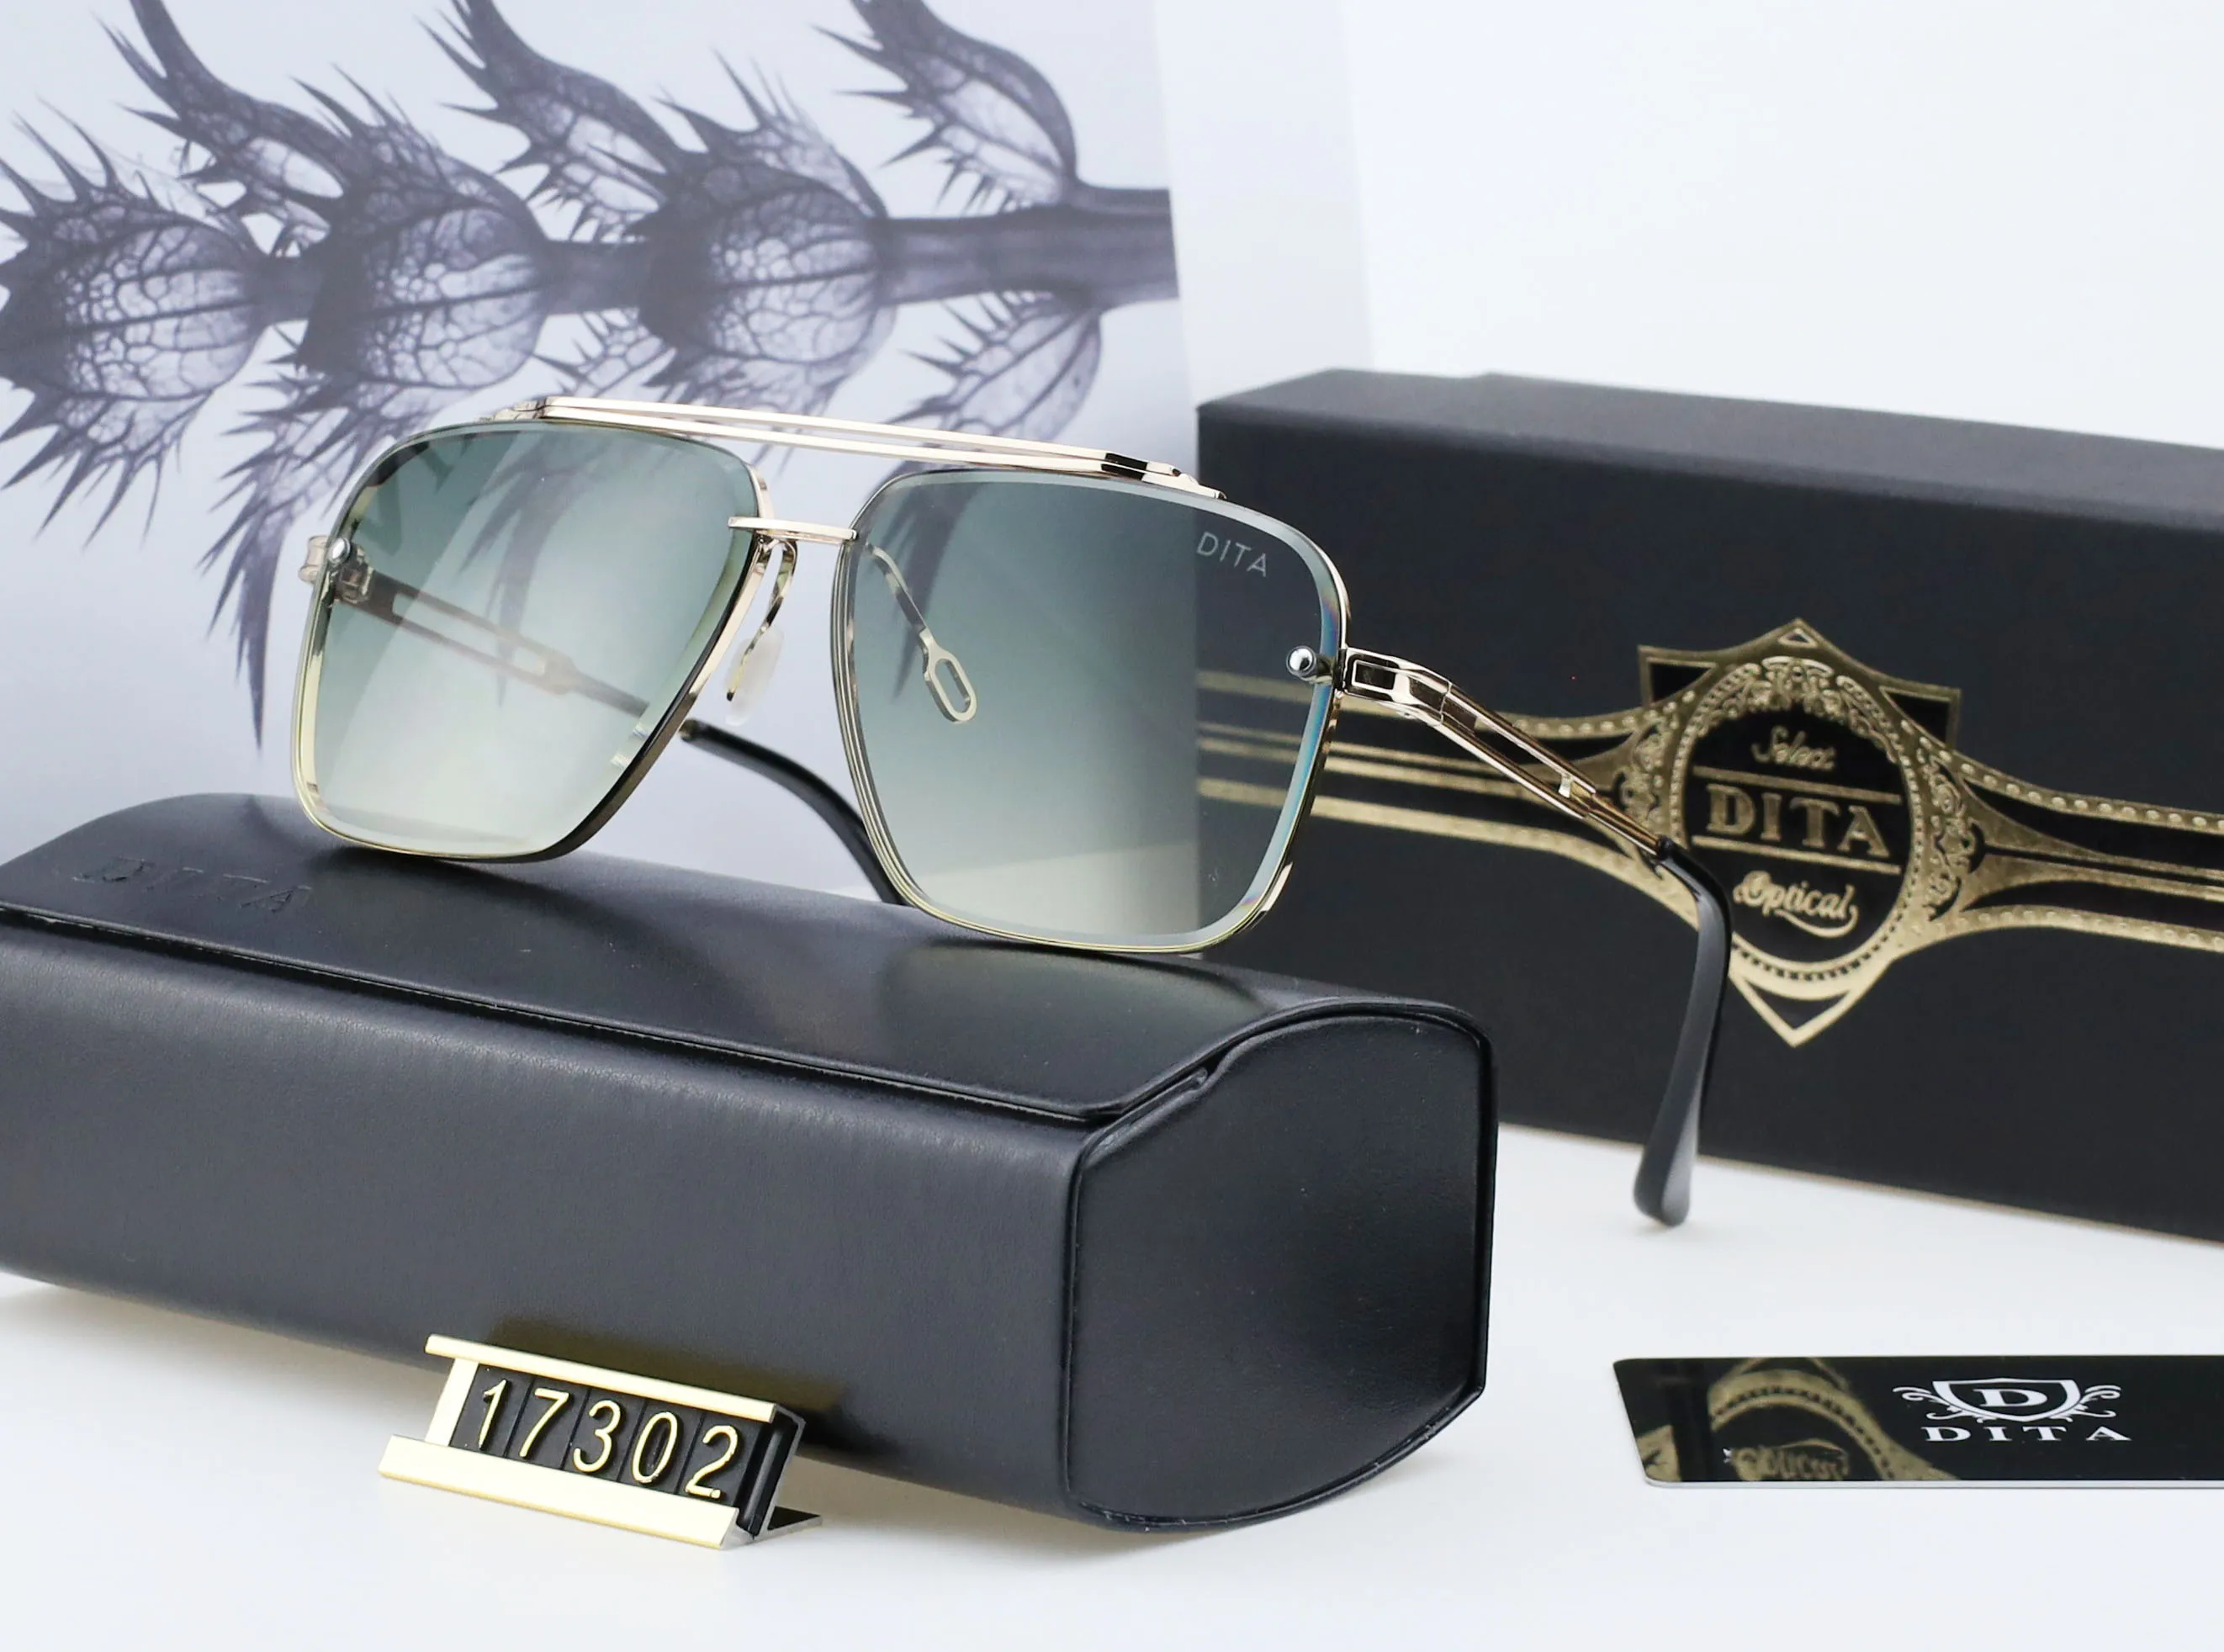 Лучший дизайнер Dita 17302 Солнцезащитные очки мужские и женские металлические ретро модные дизайнерские черные очки с дверью, все соответствуют UV 400 Po281S